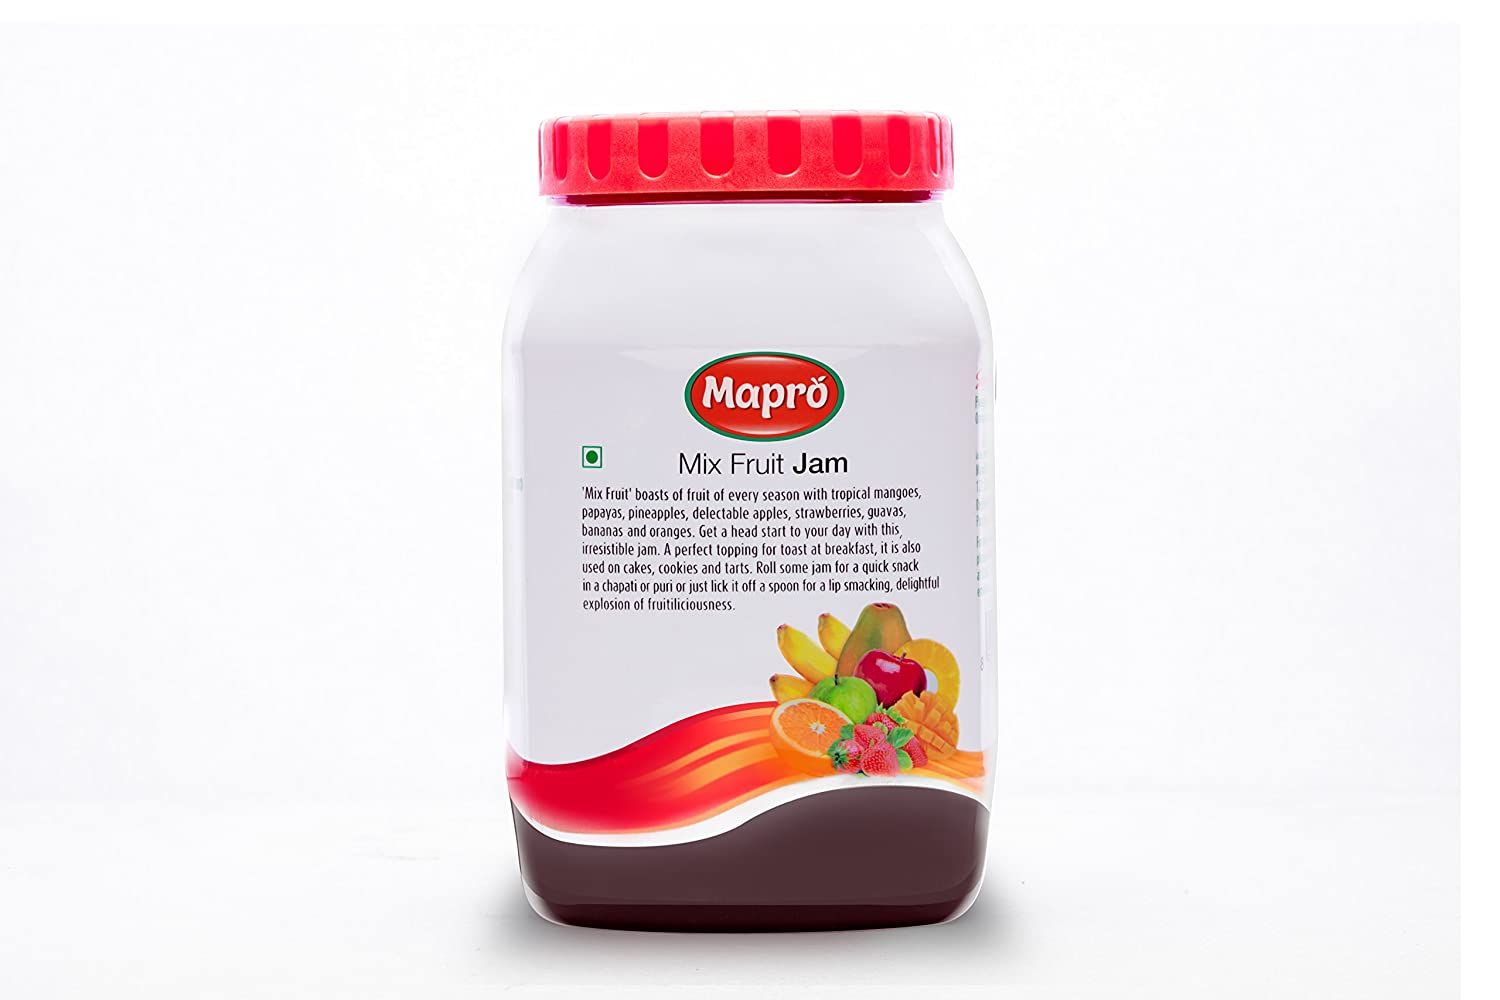 Mapro Mix Fruit Jam Image